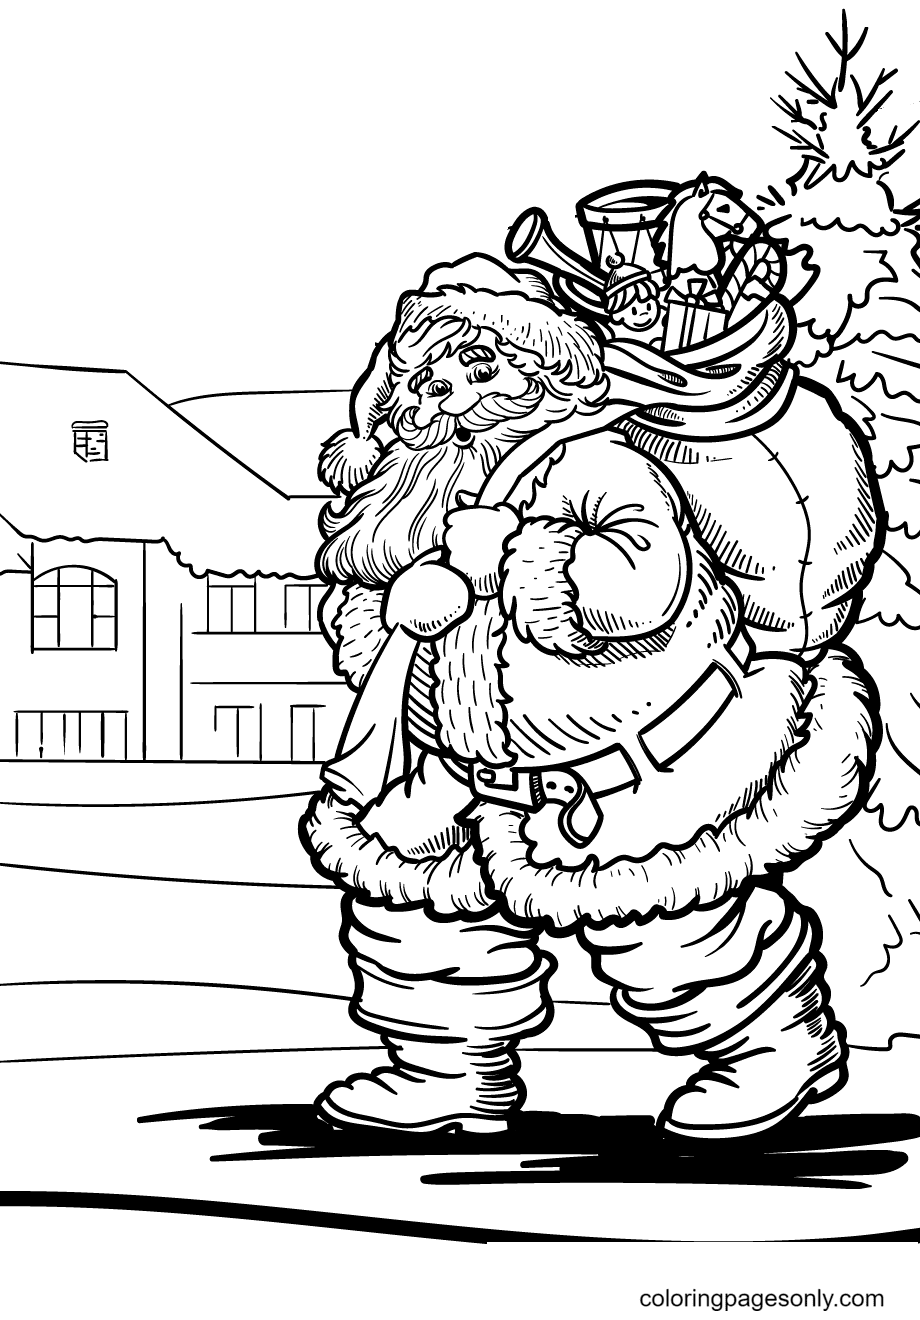 Раскраска Дед Мороз с волшебным мешком подарков